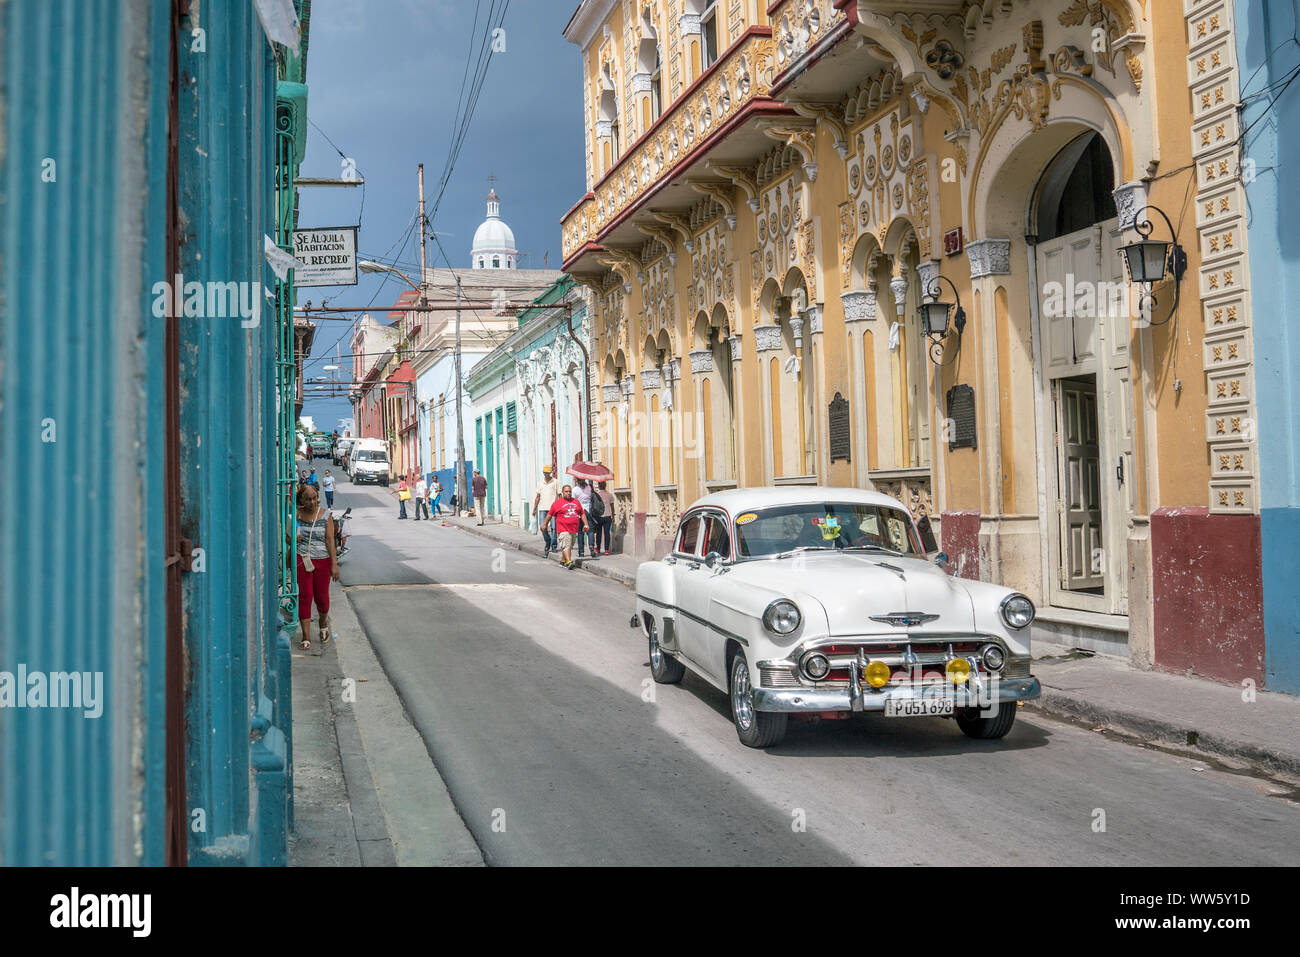 A white vintage car driving through a street in Santiago de Cuba Stock Photo